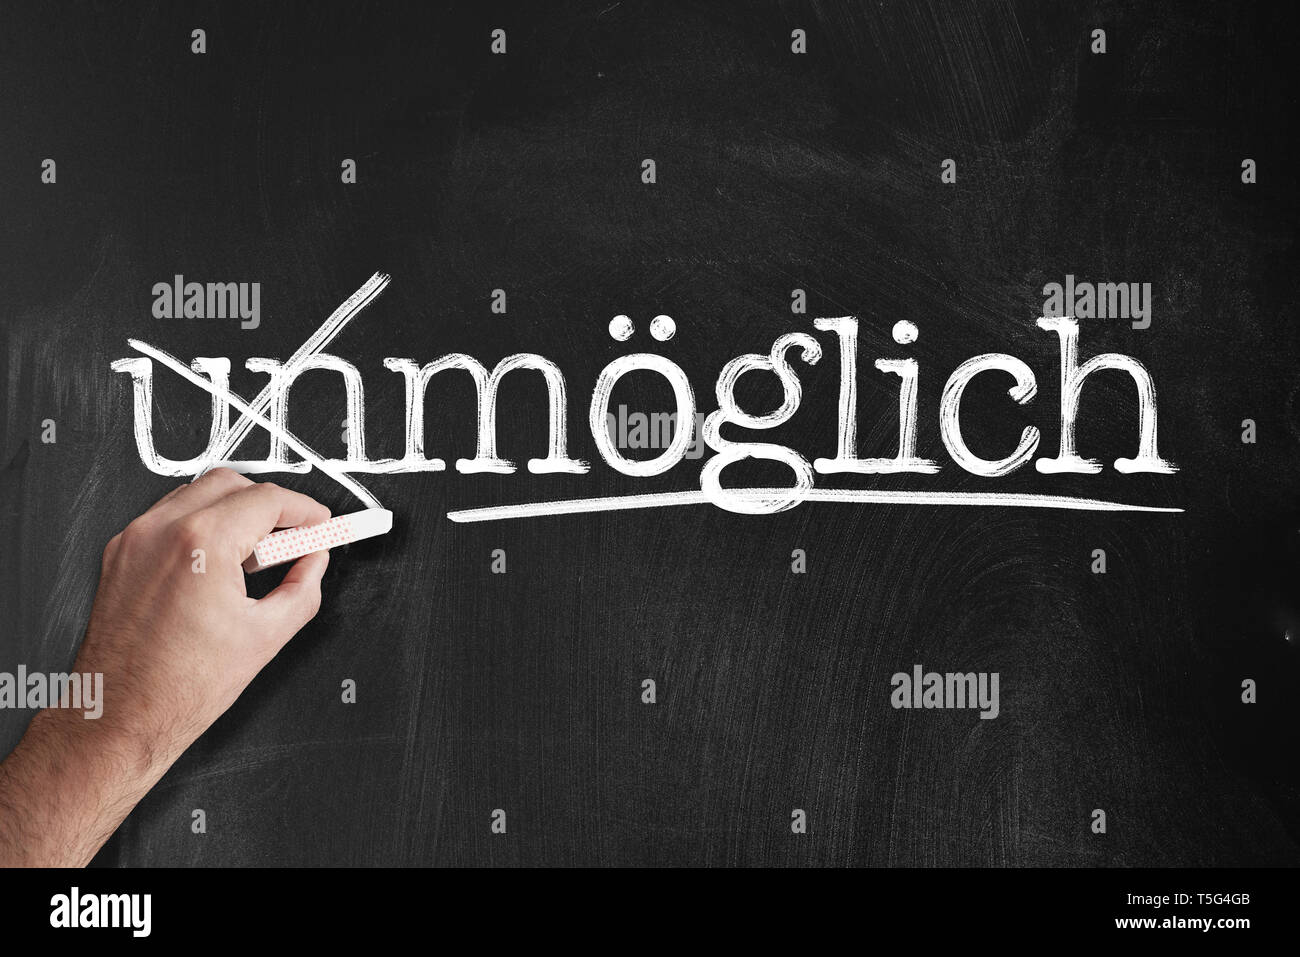 Ändern Wort unmöglich zu wolkig, Deutsch für unmöglich und möglich, am schwarzen Brett motivation Konzept Stockfoto